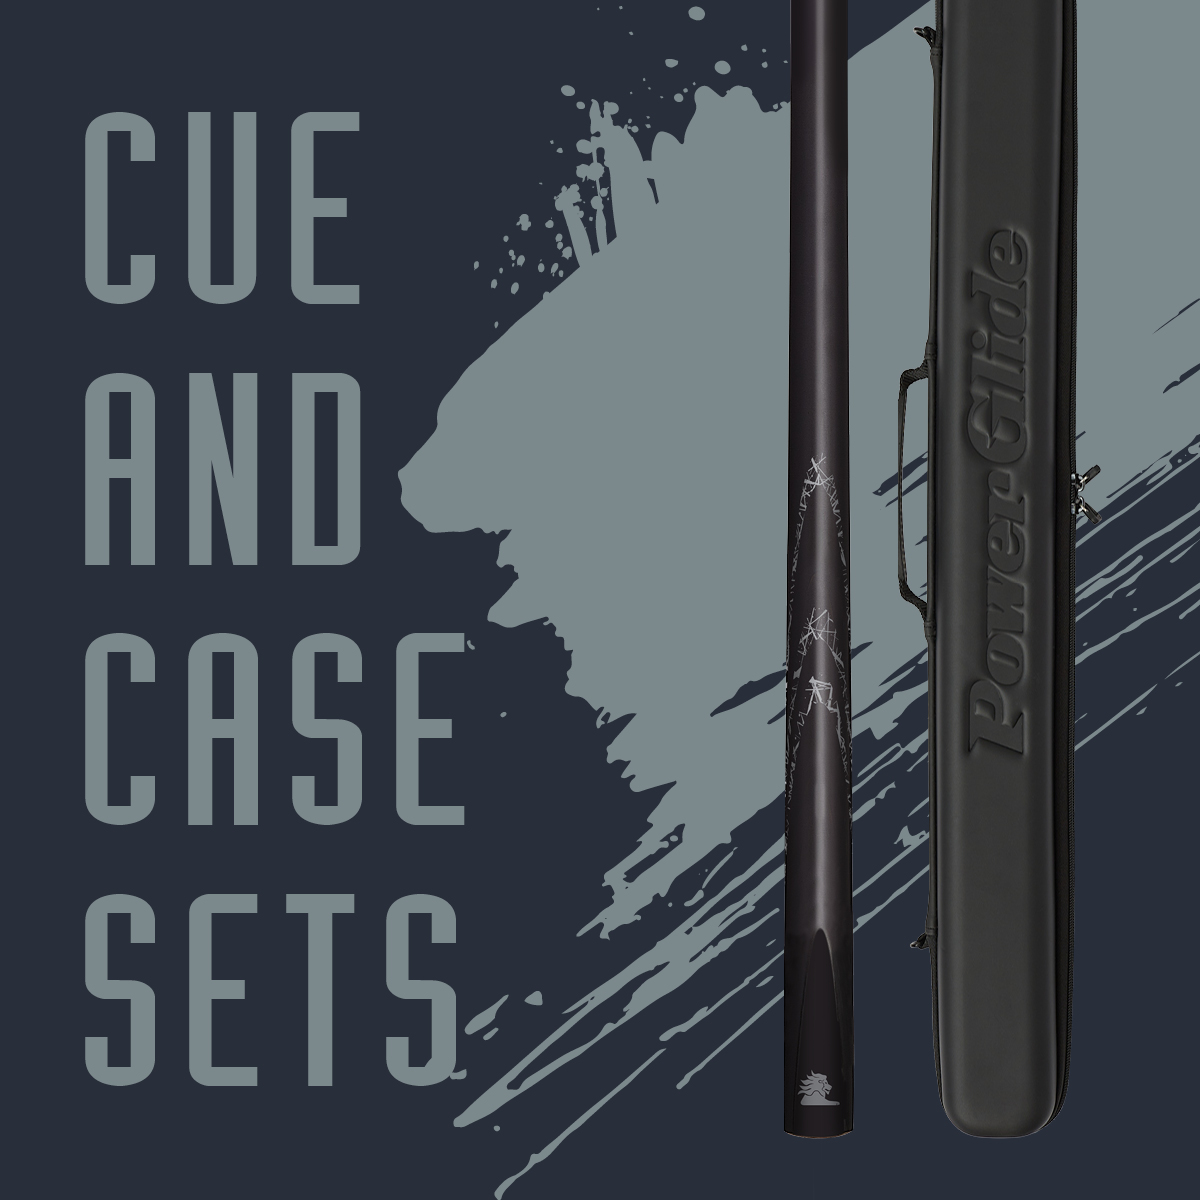 Cue & Case Sets